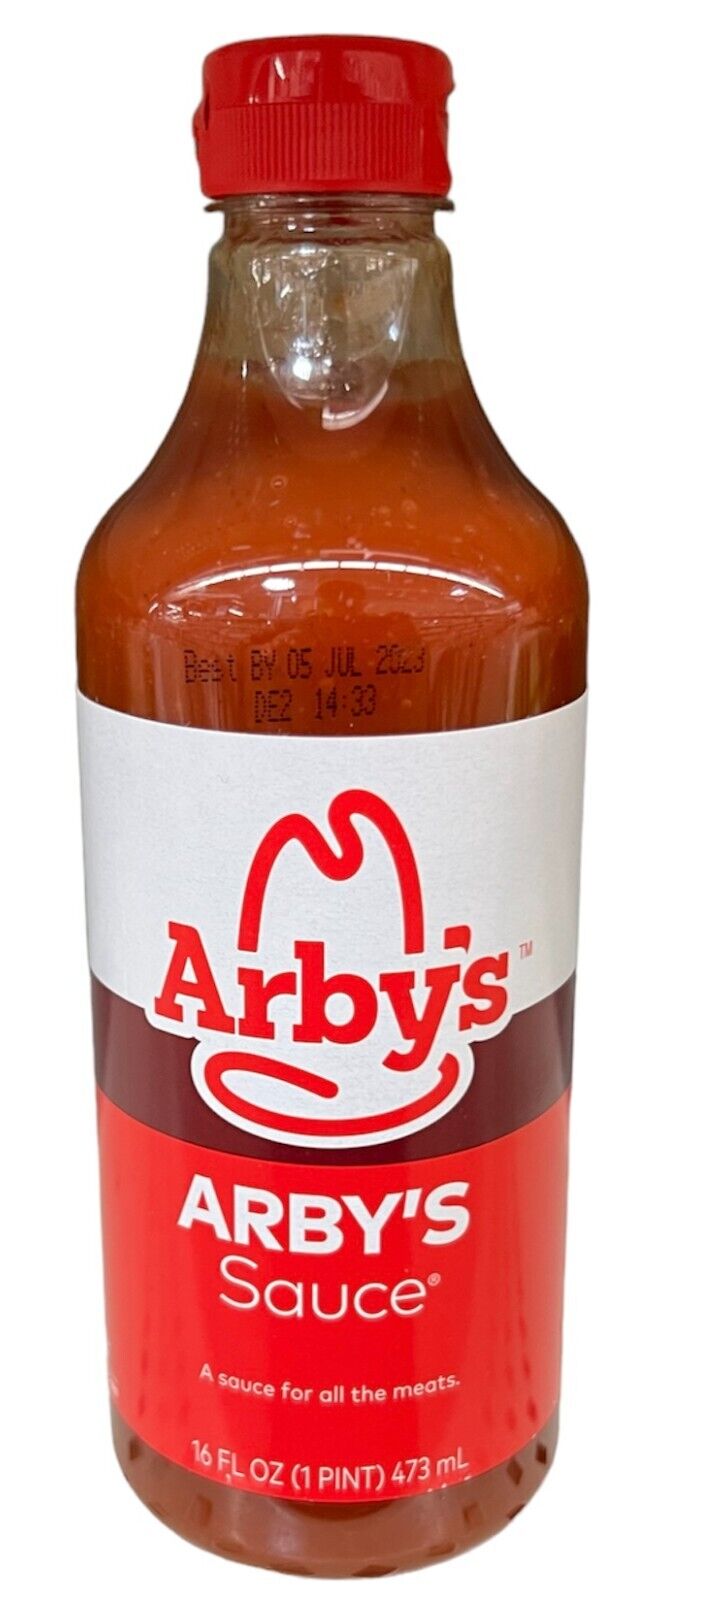 Arby's Beef, Pork or Chicken Sauce 16 oz